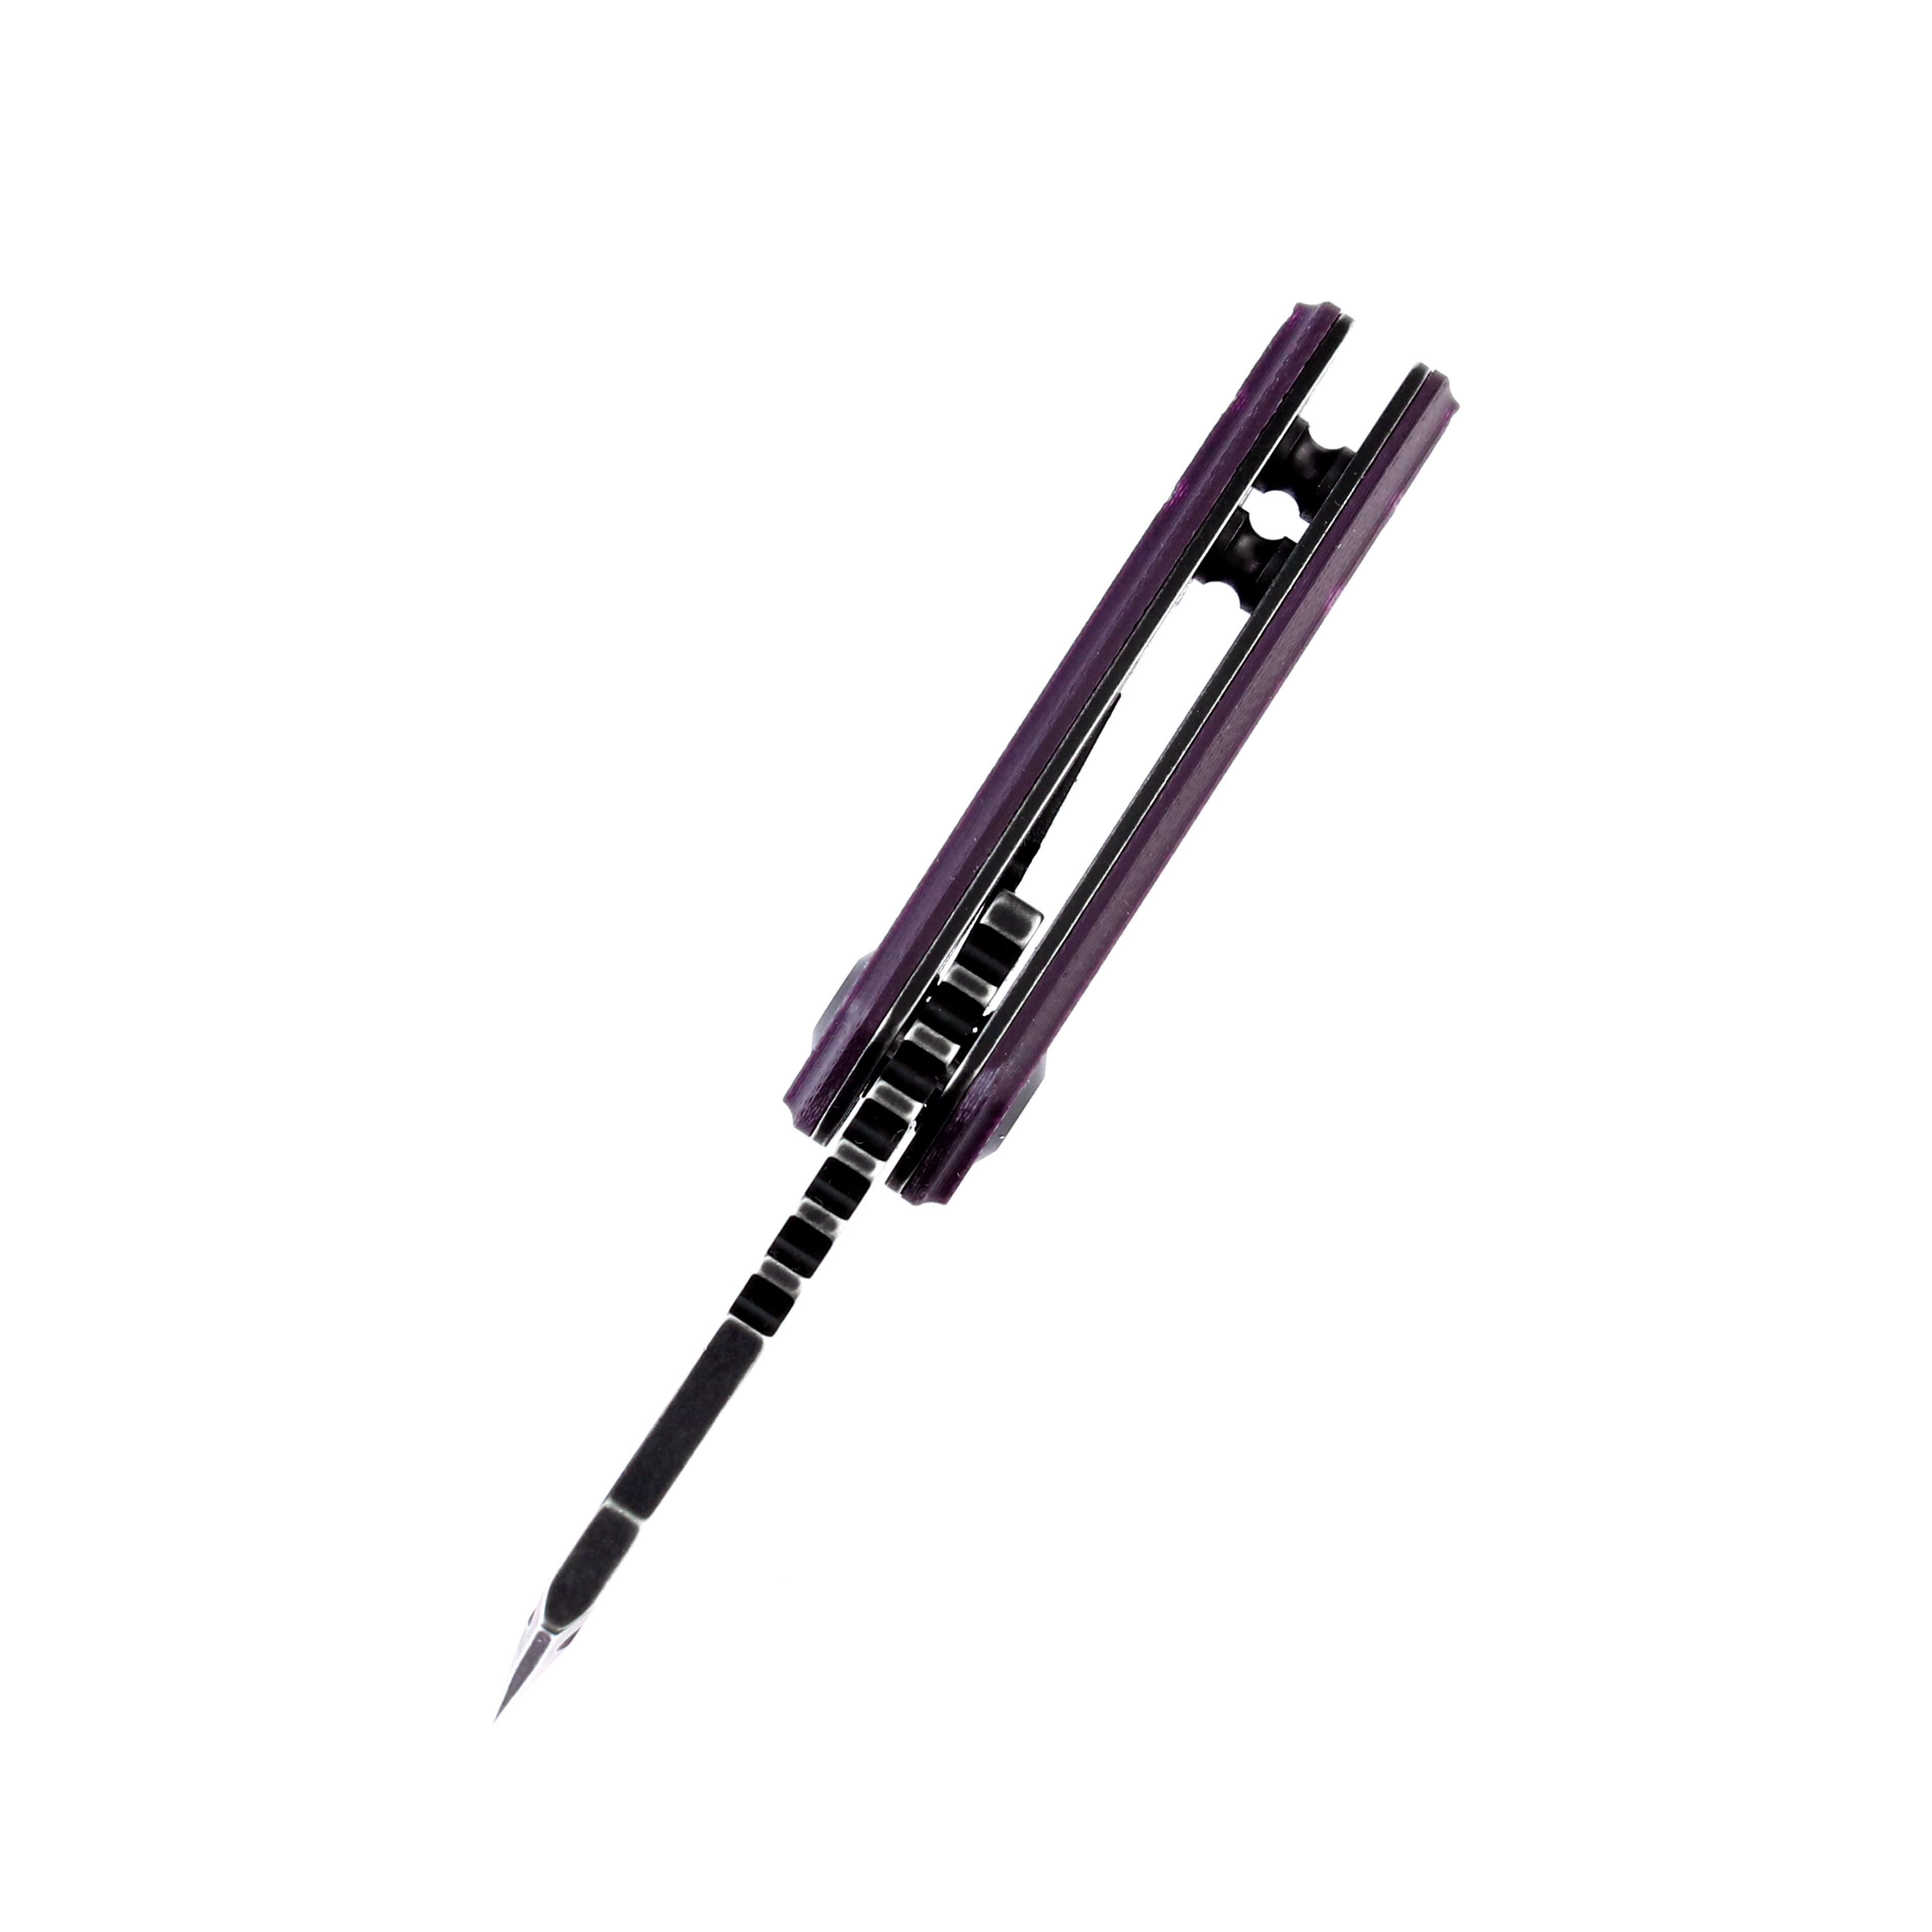 Kansept 刀具 T3030A3 迷你 Korvid 154 厘米刀片紫色 G10 手柄内衬锁 Edc 刀